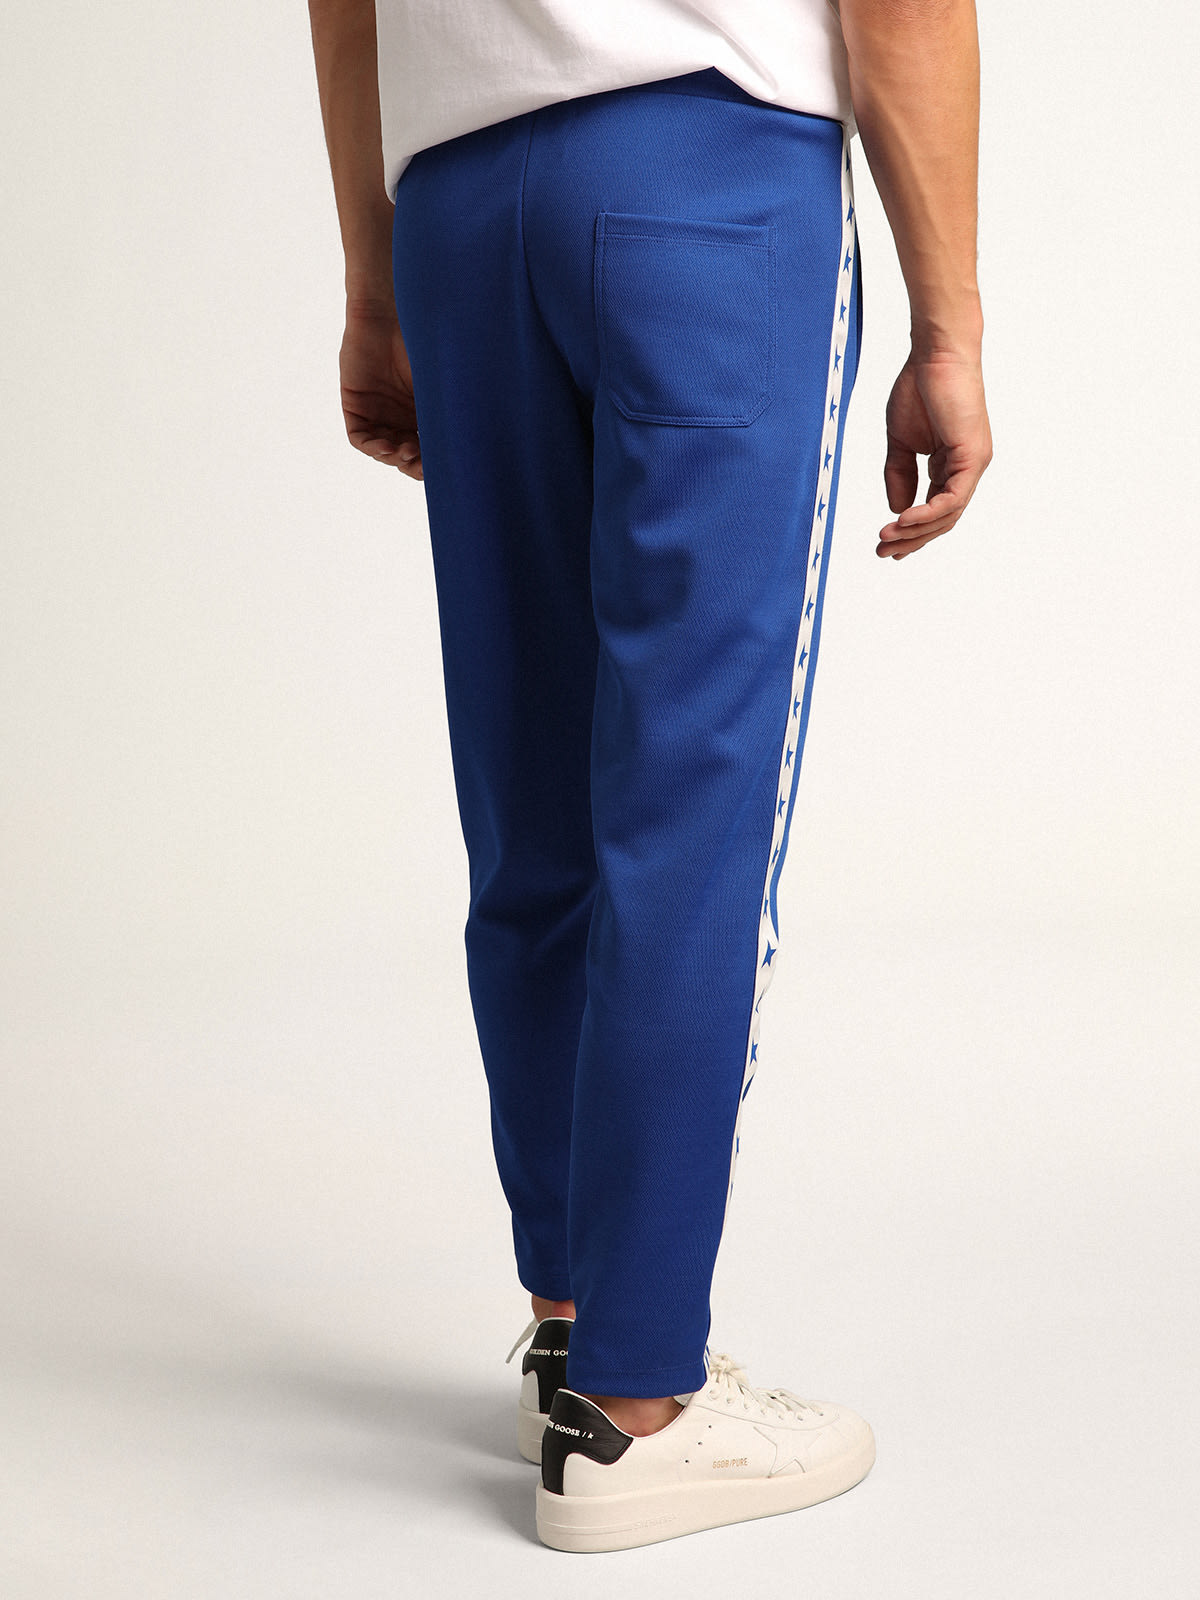 Golden Goose - Pantalon de jogging homme bleu avec bande et étoiles sur les côtés in 